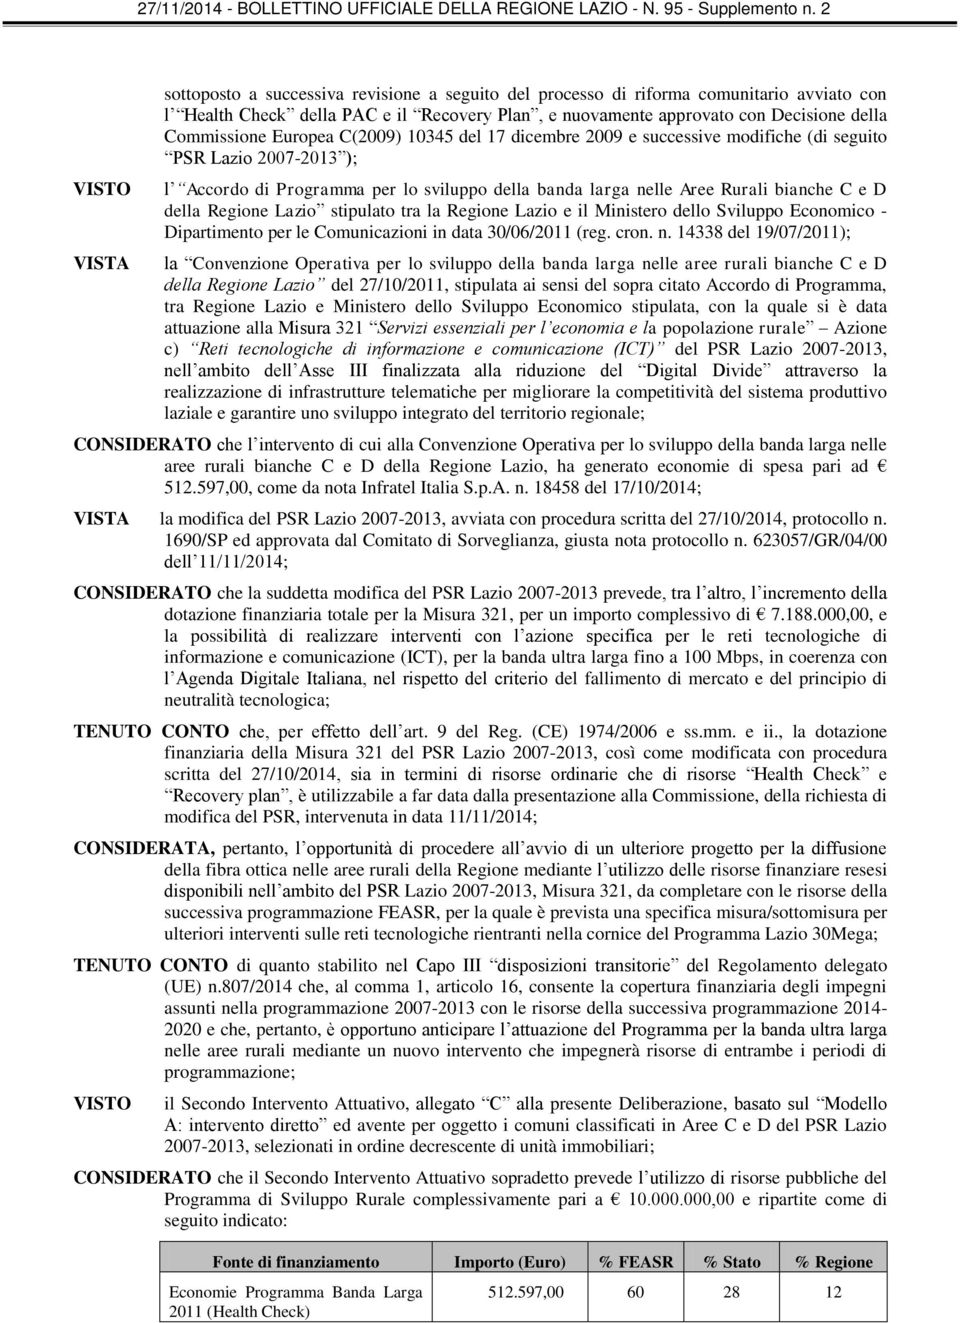 Lazio stipulato tra la Regione Lazio e il Ministero dello Sviluppo Economico - Dipartimento per le Comunicazioni in data 30/06/2011 (reg. cron. n.